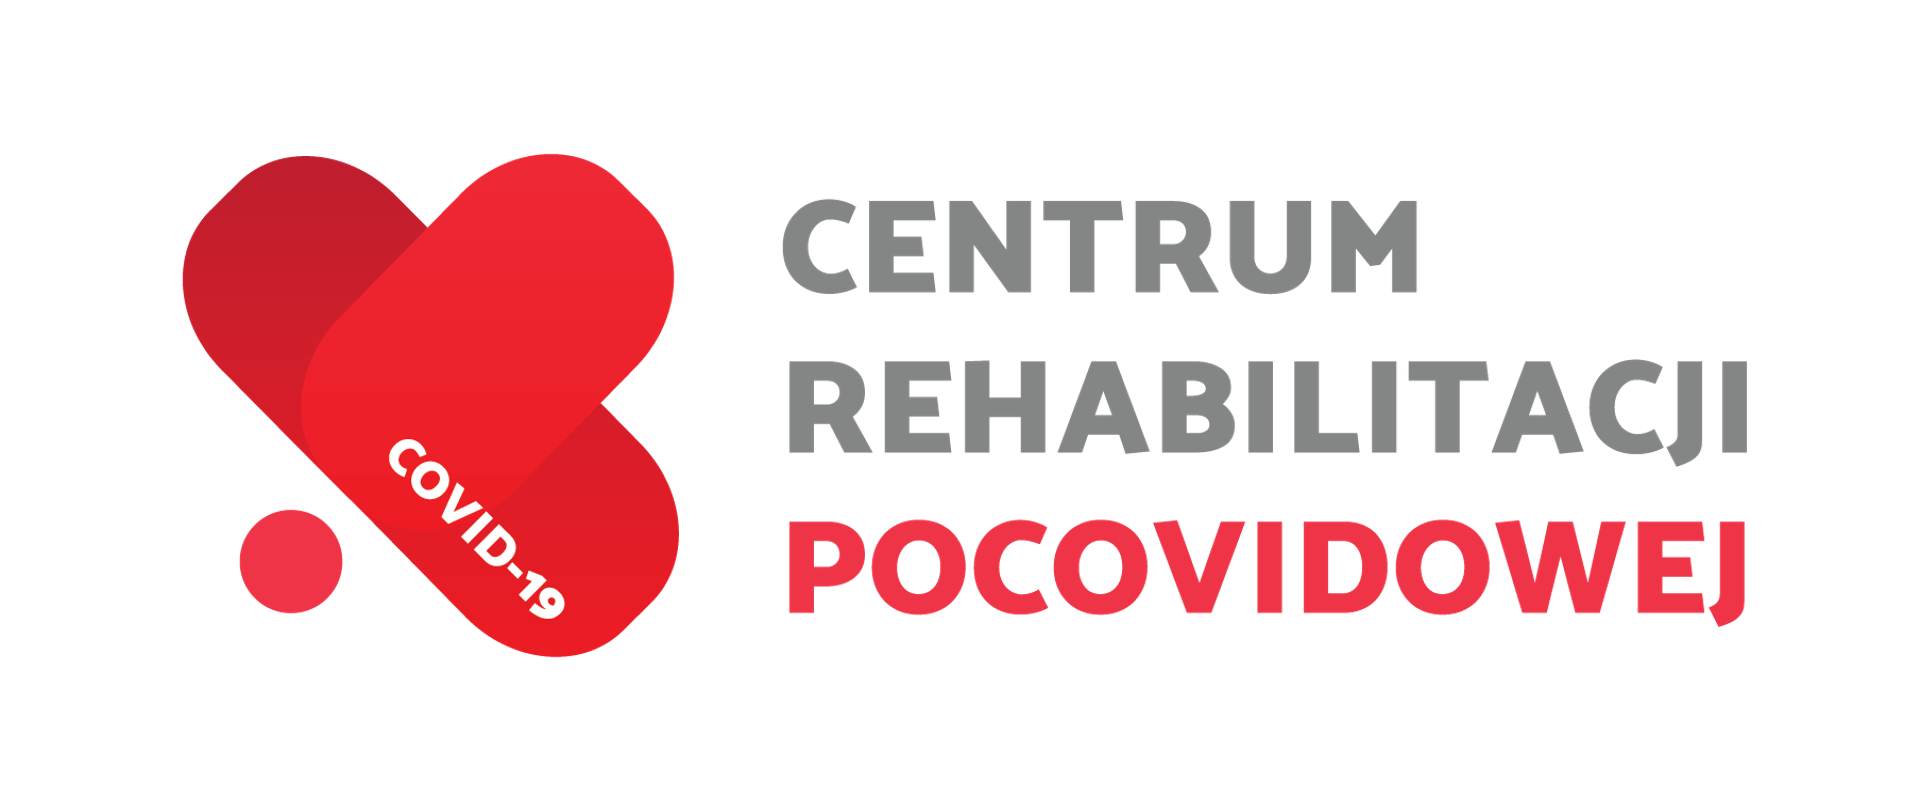 Centrum Rehabilitacji Pocovidowej